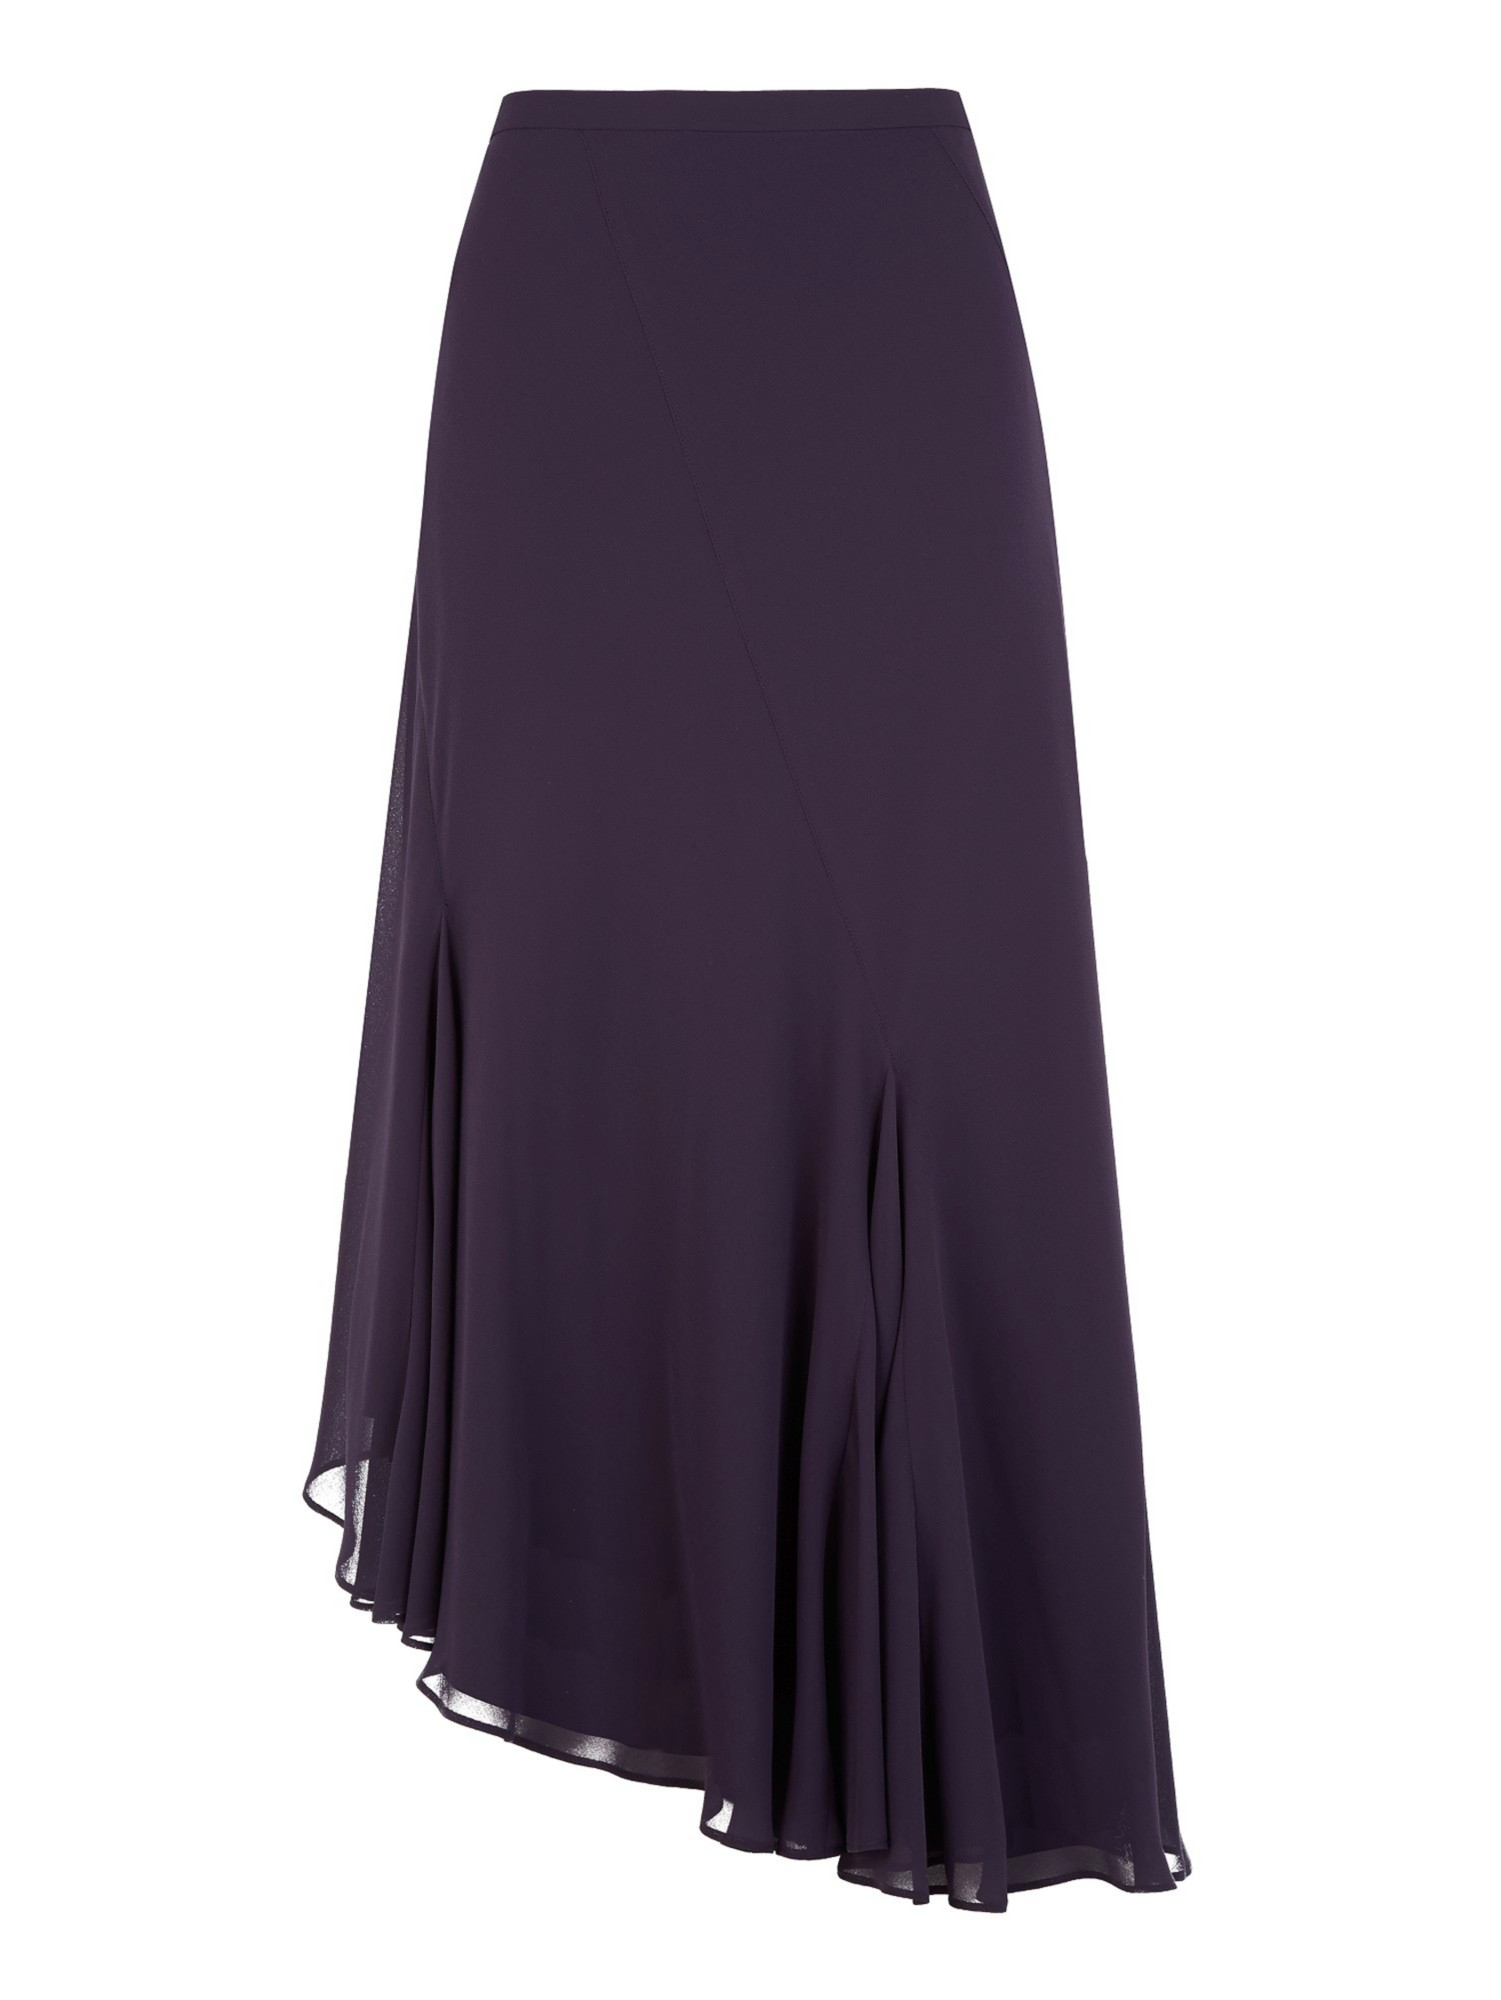 Jacques vert Chiffon Cut Skirt in Purple (Dark Purple) | Lyst